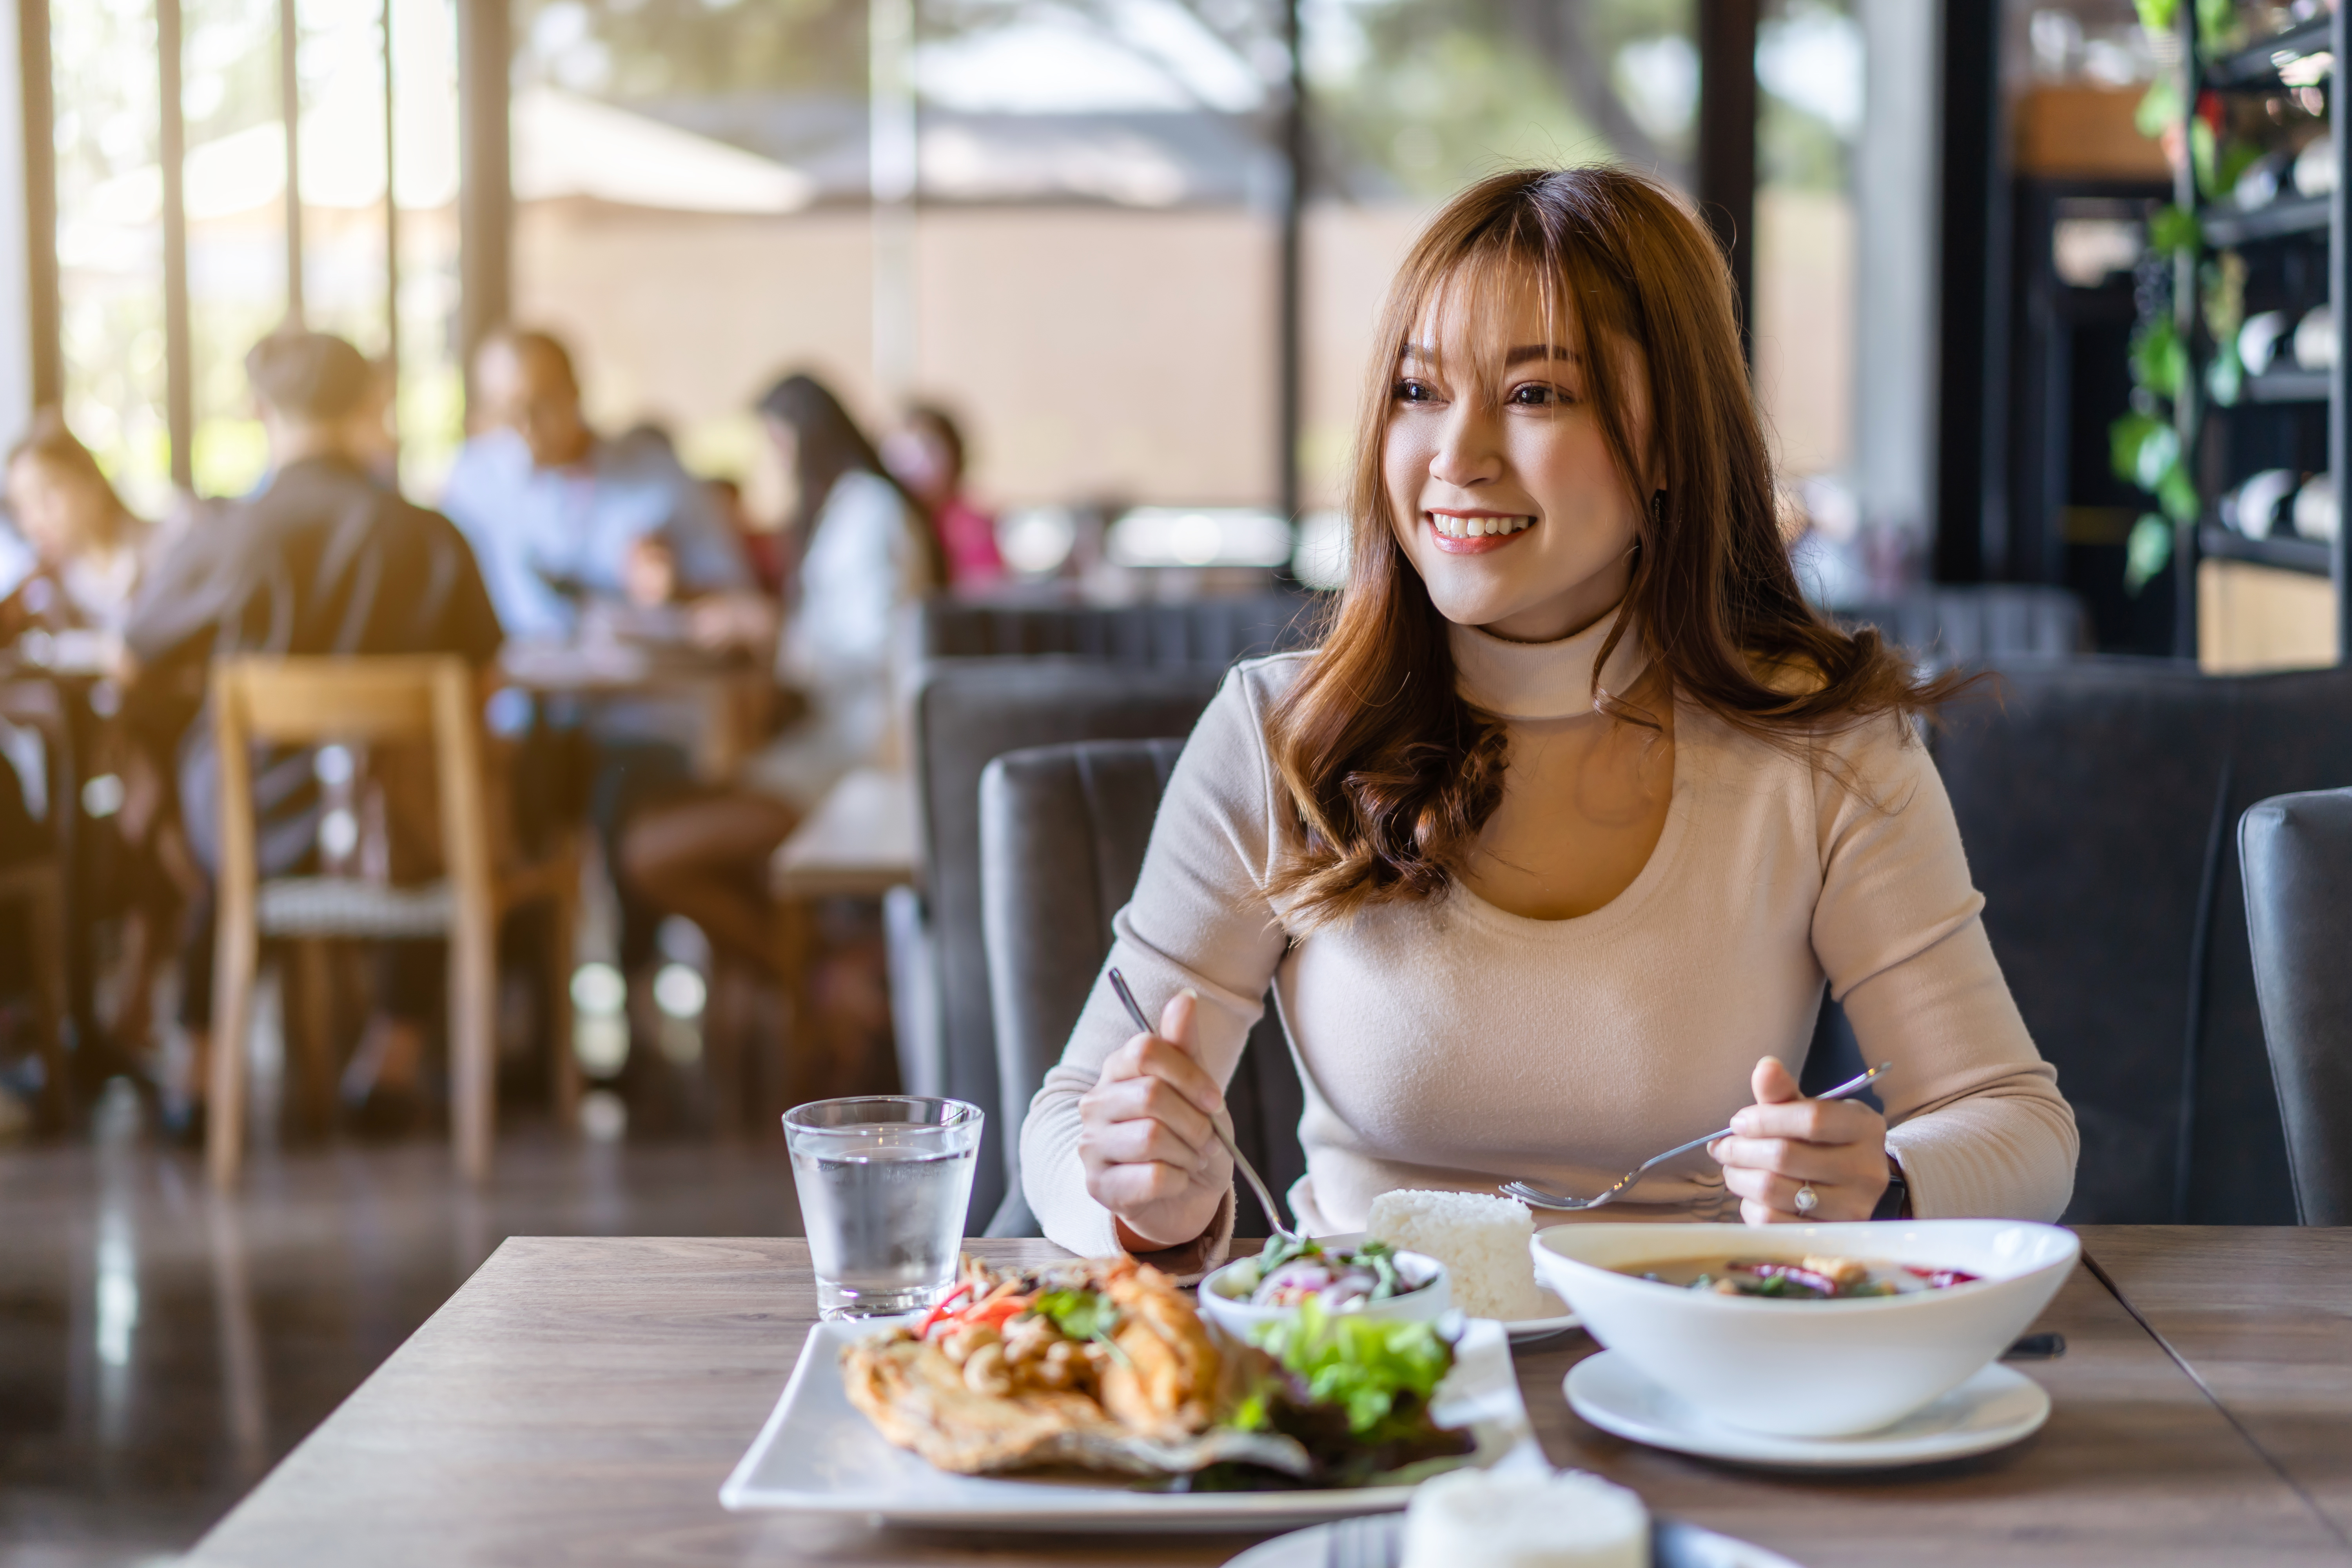 Eine Frau beim Essen in einem Restaurant | Quelle: Shutterstock